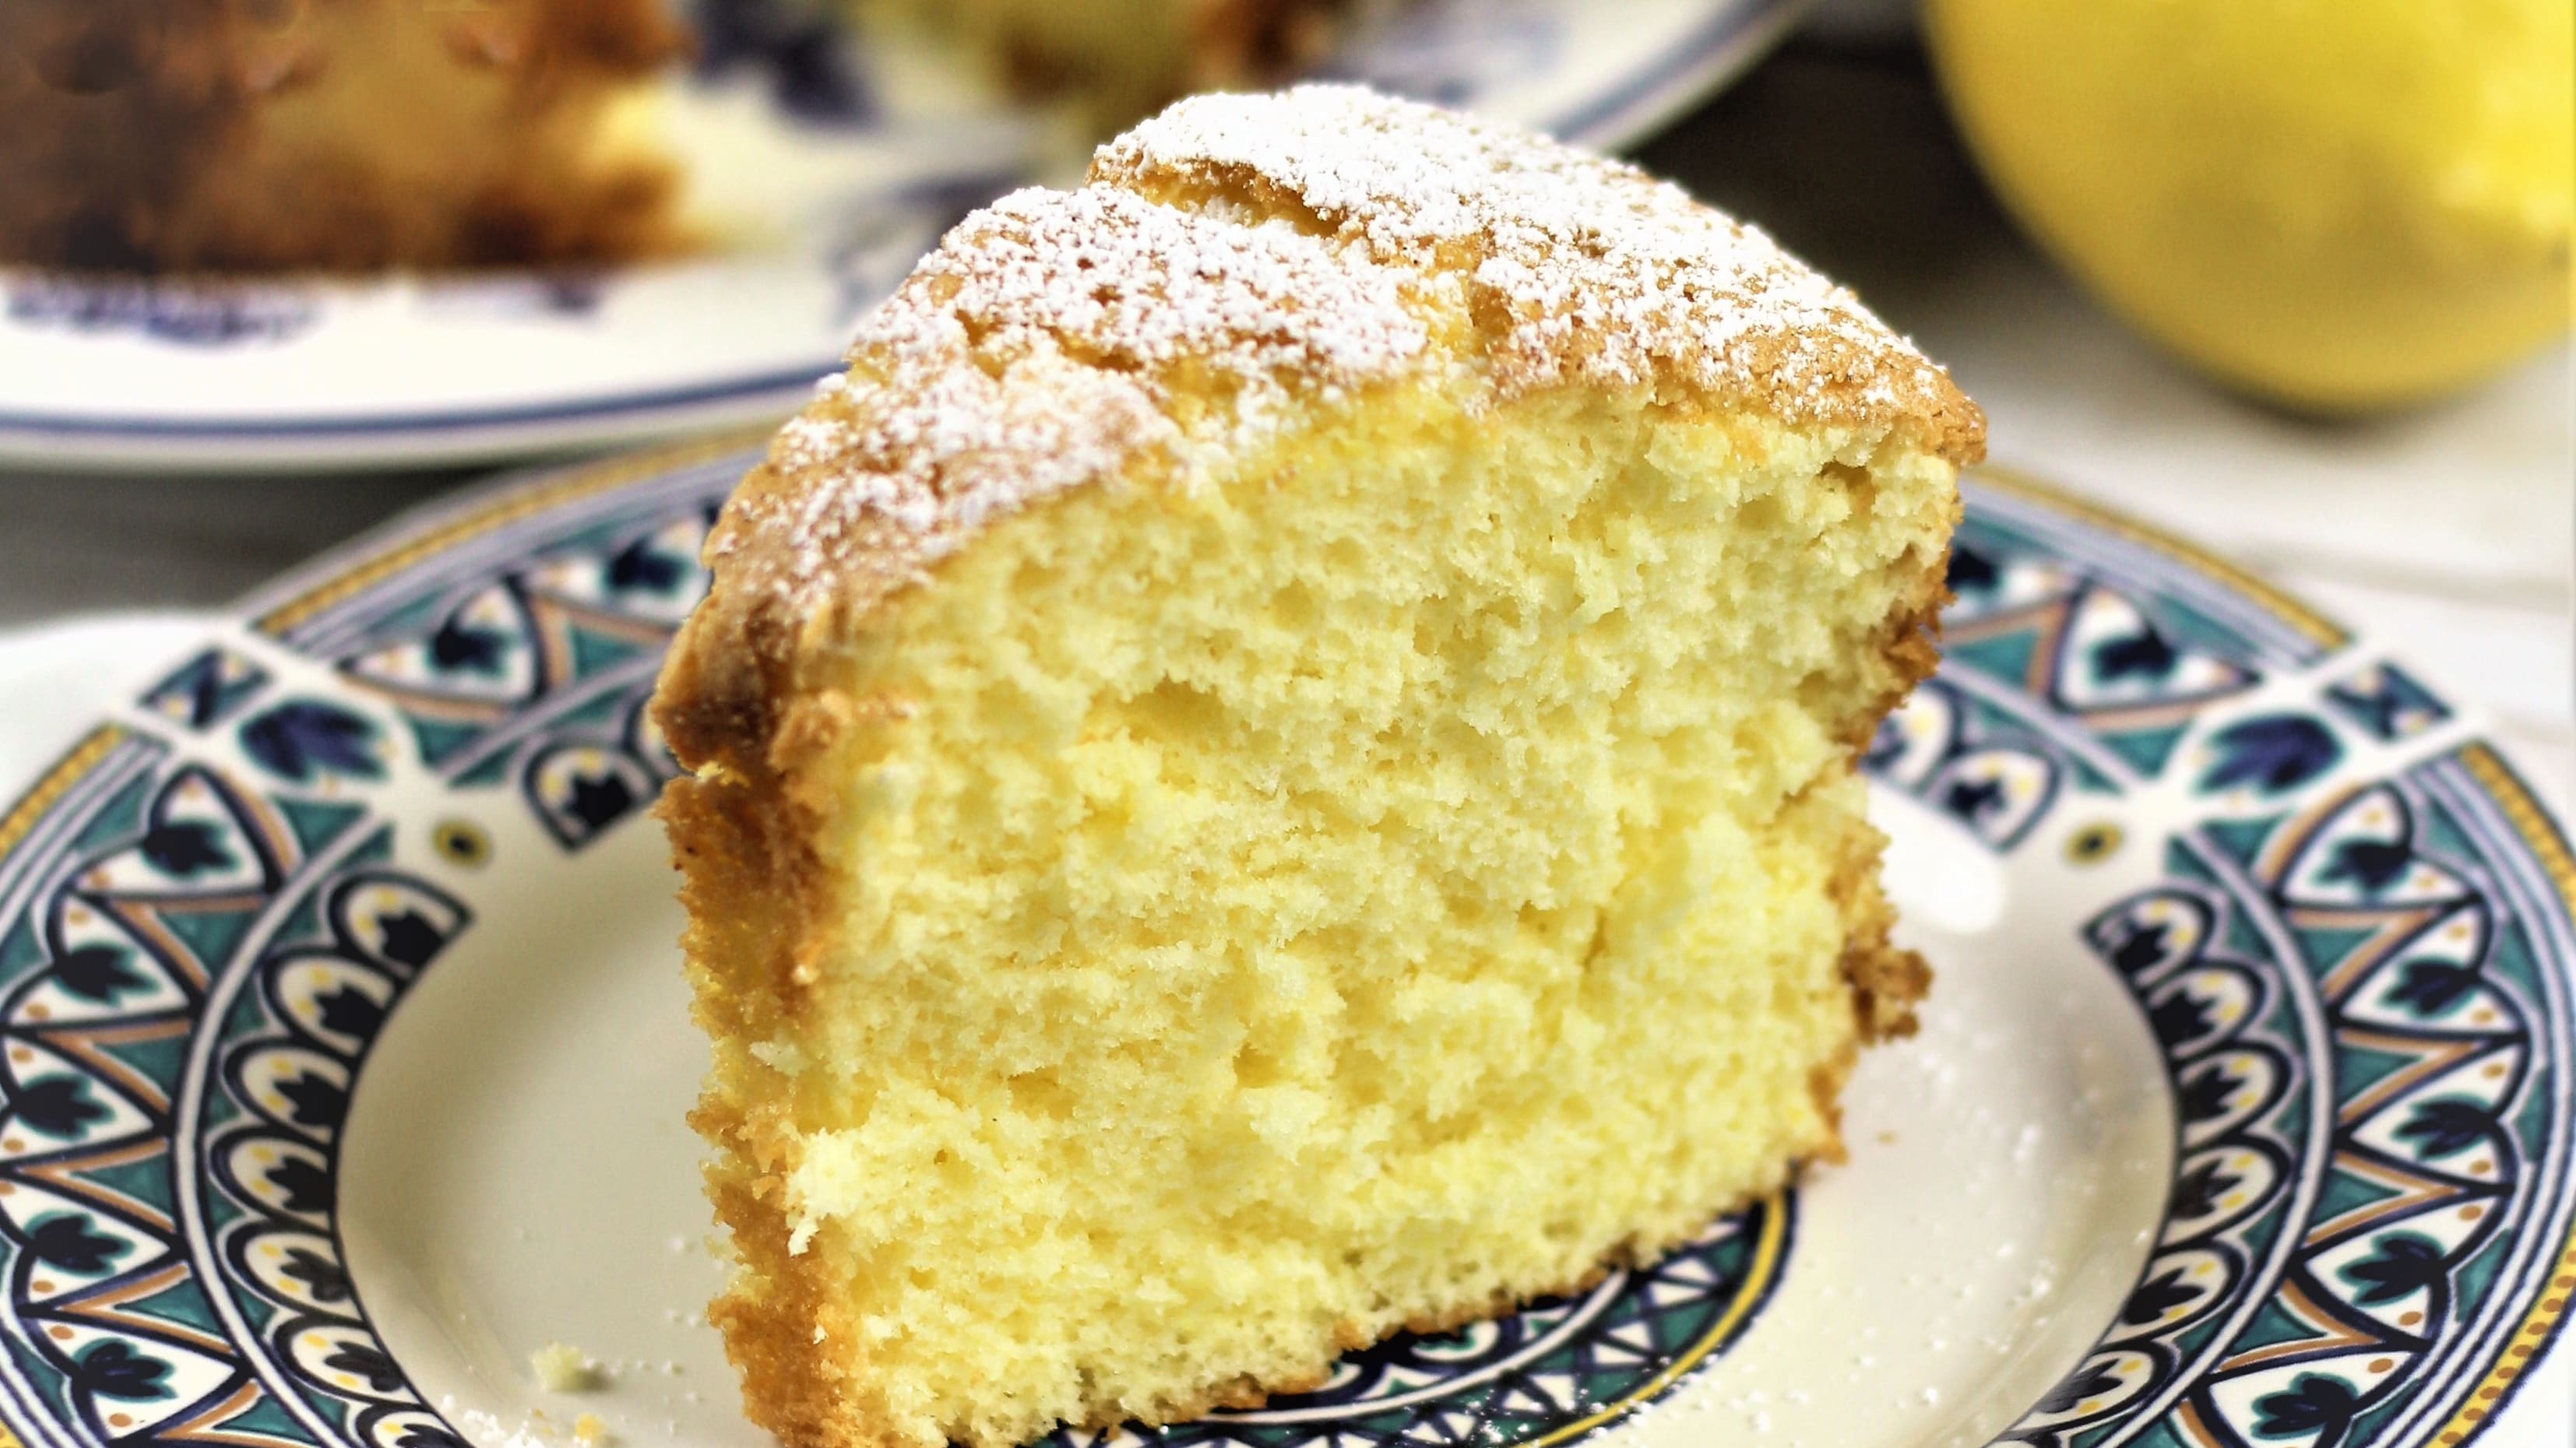 HOW TO MAKE PAN DI SPAGNA (ITALIAN SPONGE CAKE) RECIPE by ItalianCakes USA  